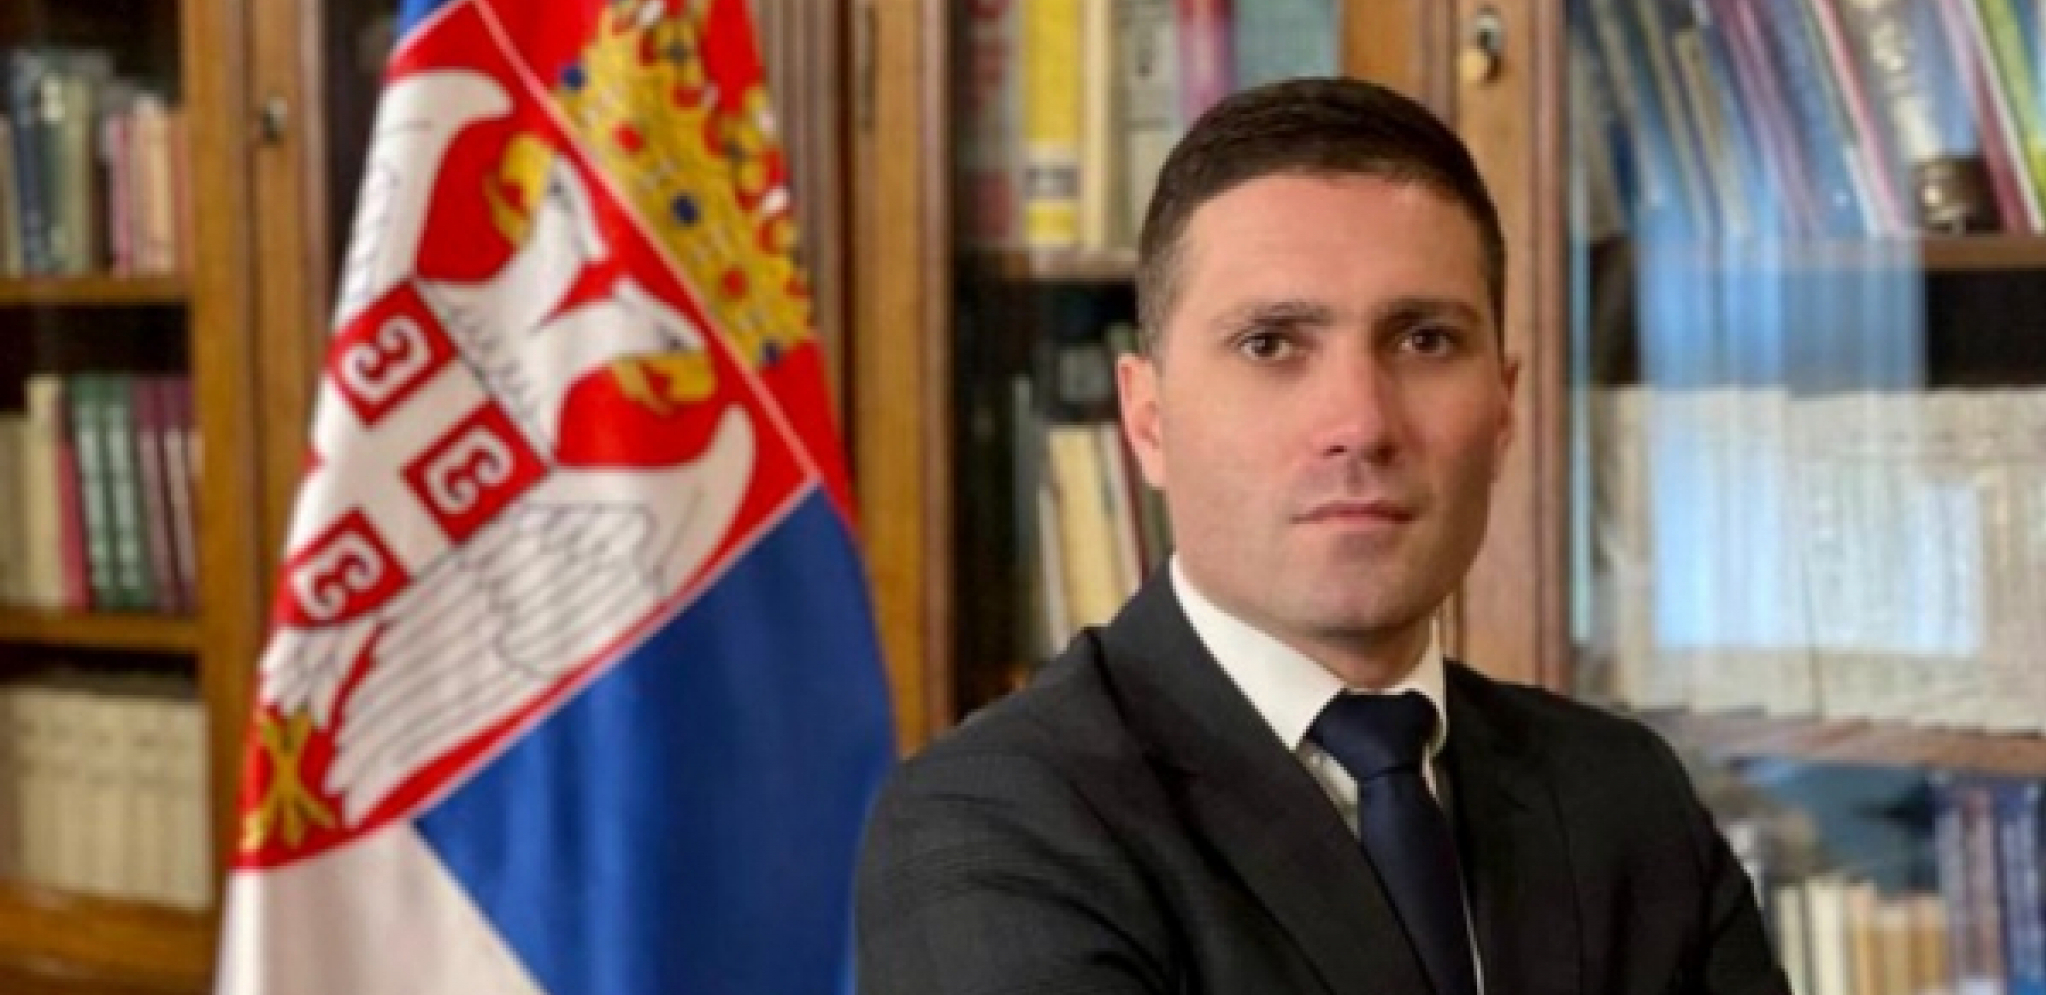 "Rada Trajković i danas stoji uz neprijatelje Srbije"